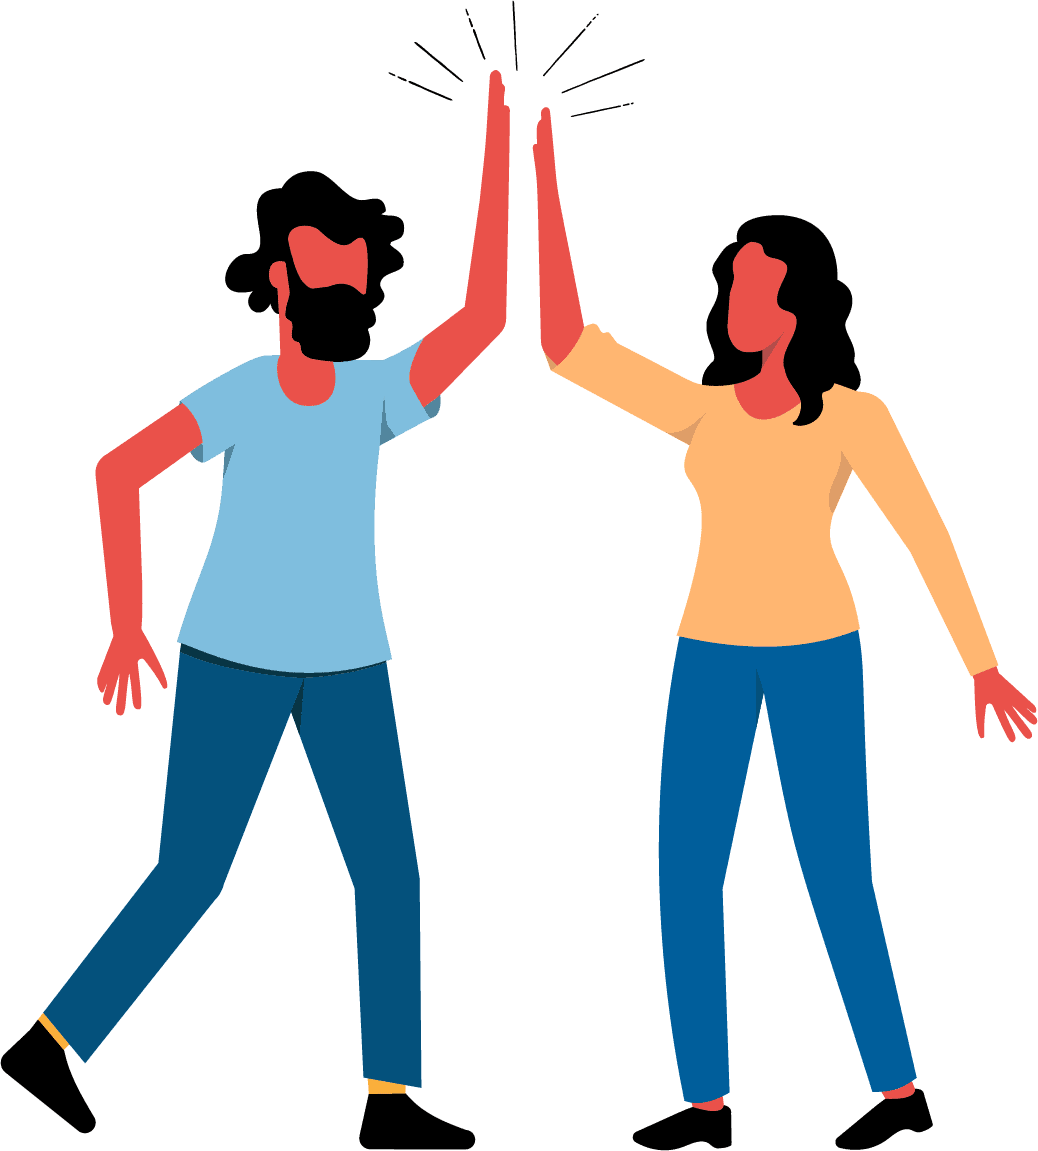 Dois adultos humanos usando o gesto comum de comemoração ou saudação em que dois humanos batem na palma da mão aberta um do outro com os braços levantados.